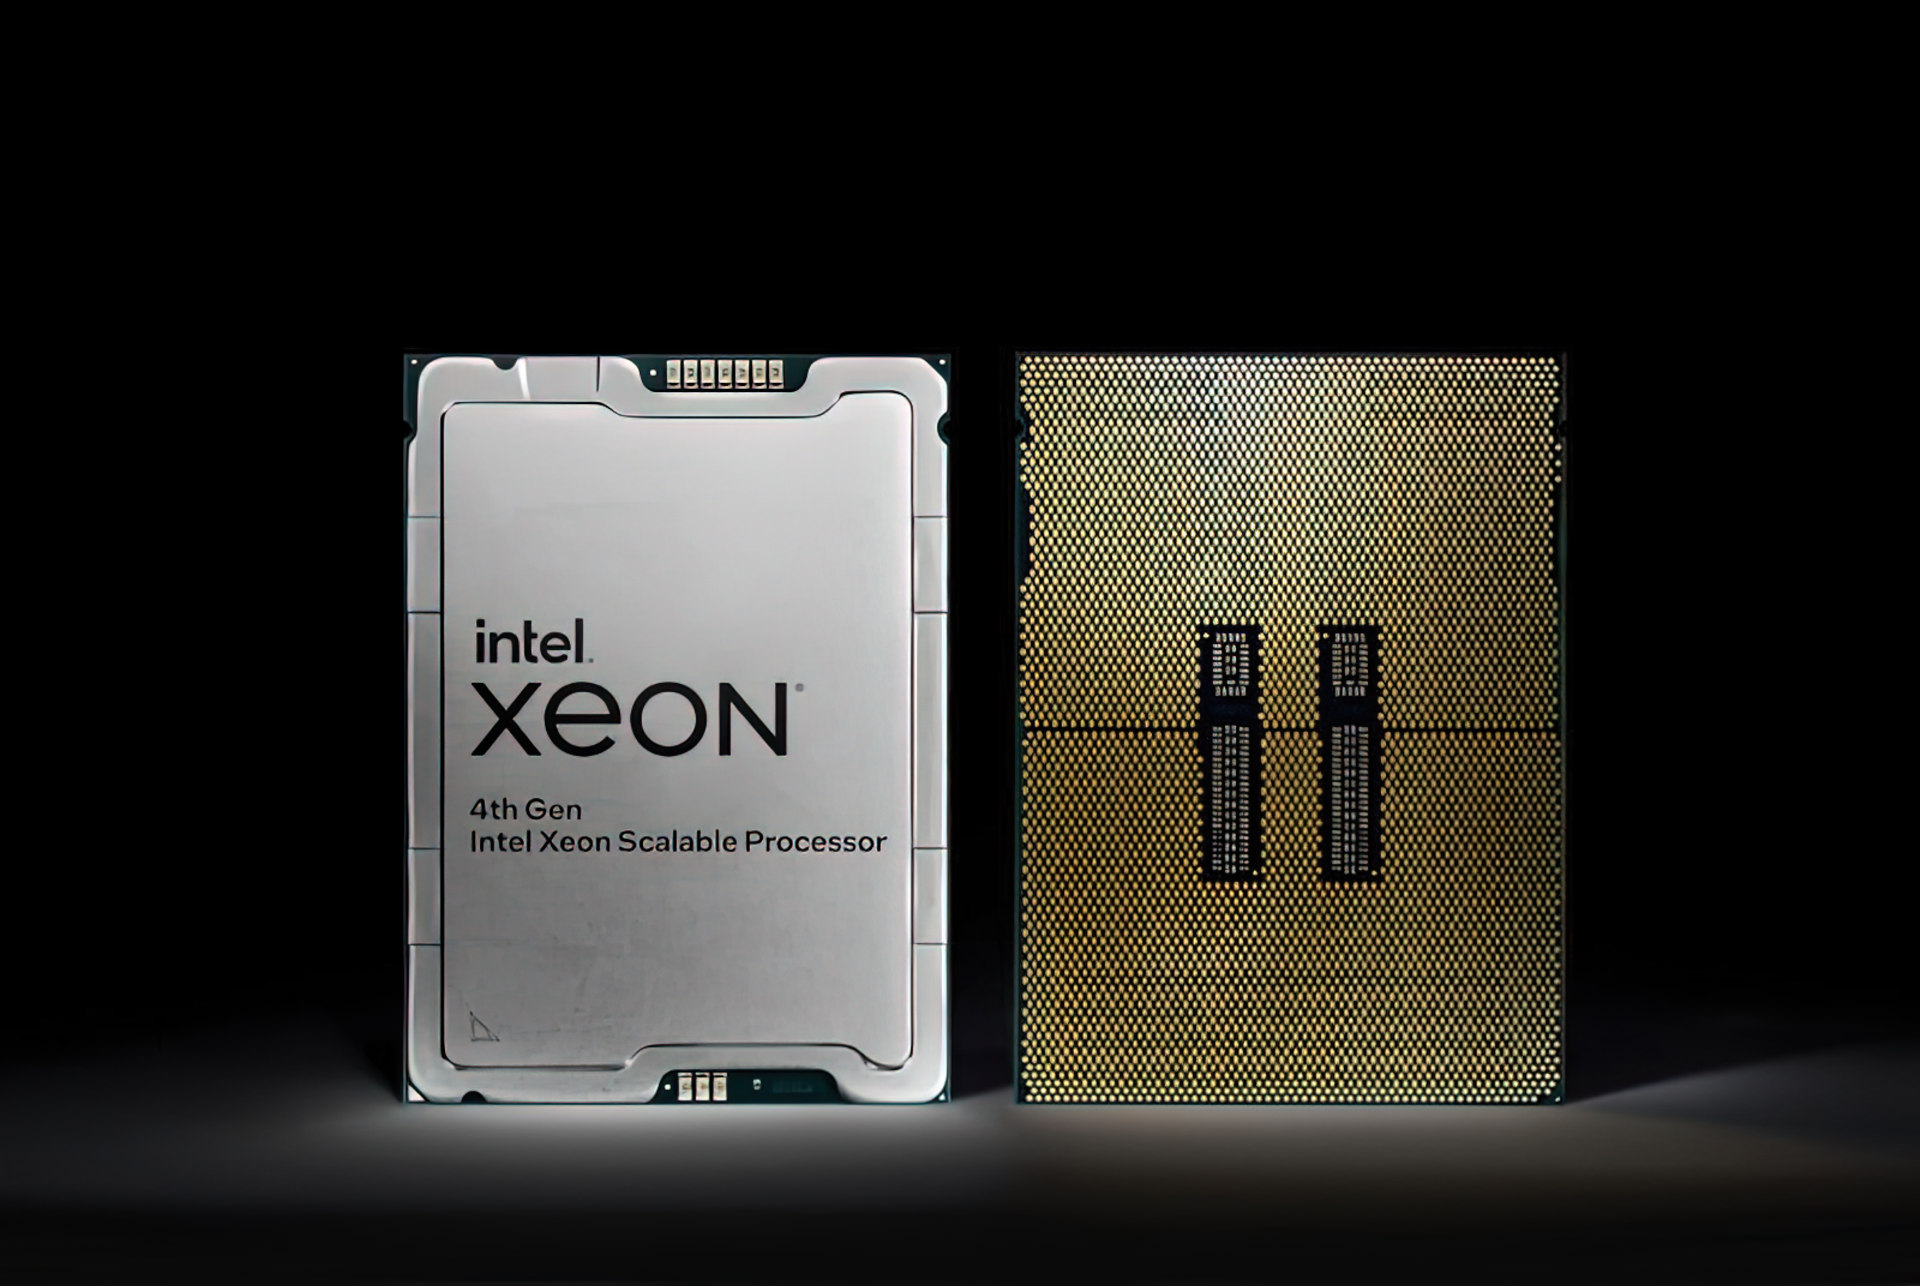 4th Gen Intel Xeon and Max Series - Sapphire Rapids materialisiert und skaliert sich